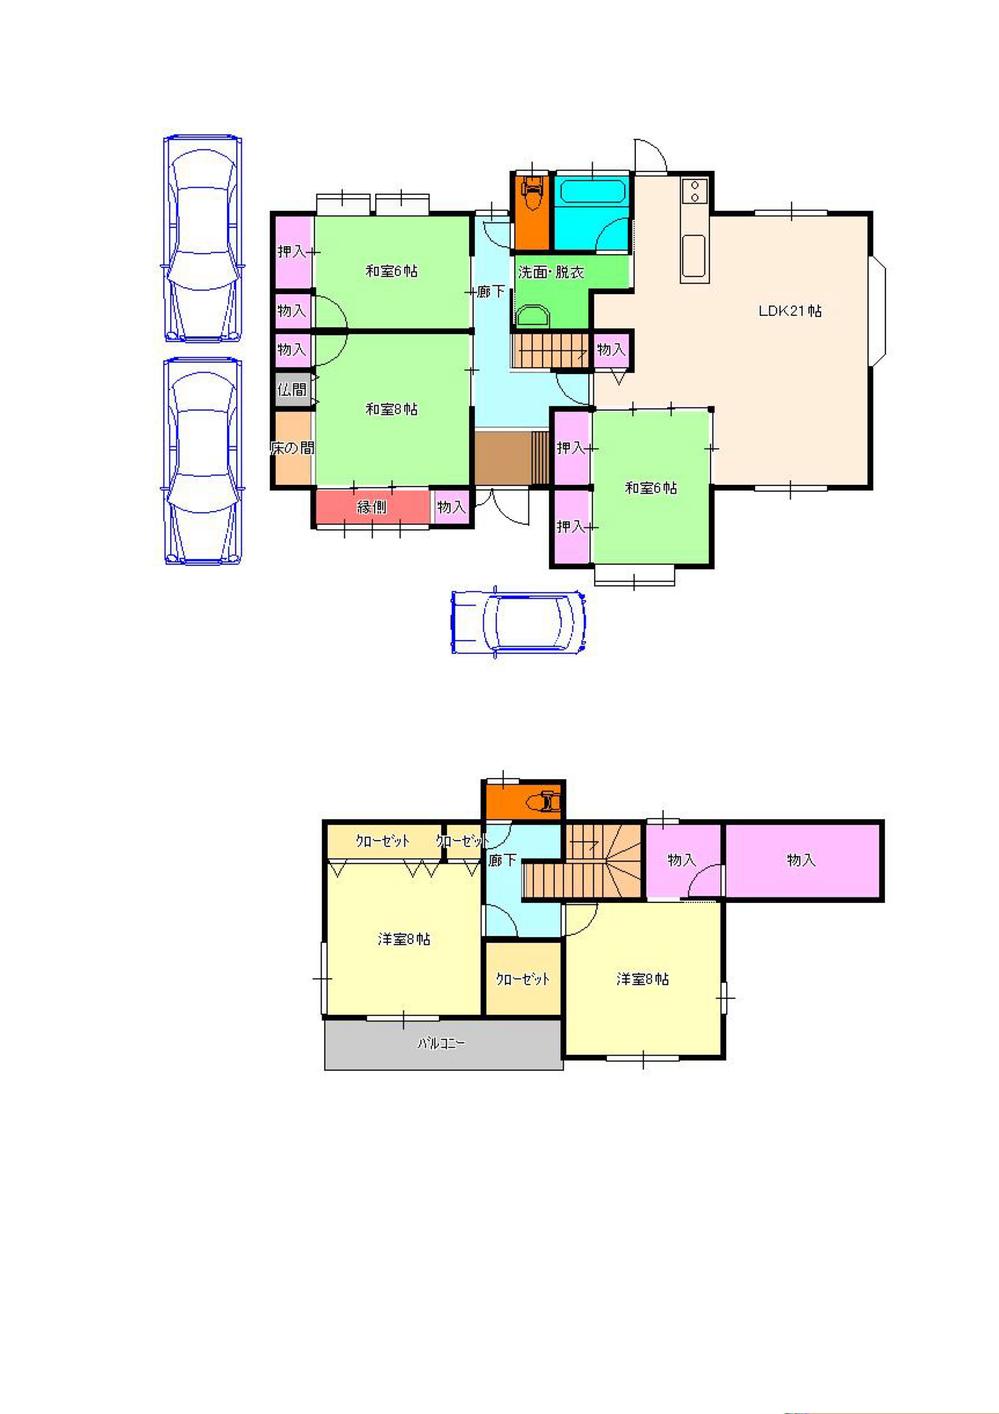 Floor plan. 19,980,000 yen, 5LDK + S (storeroom), Land area 222.33 sq m , Building area 144.79 sq m